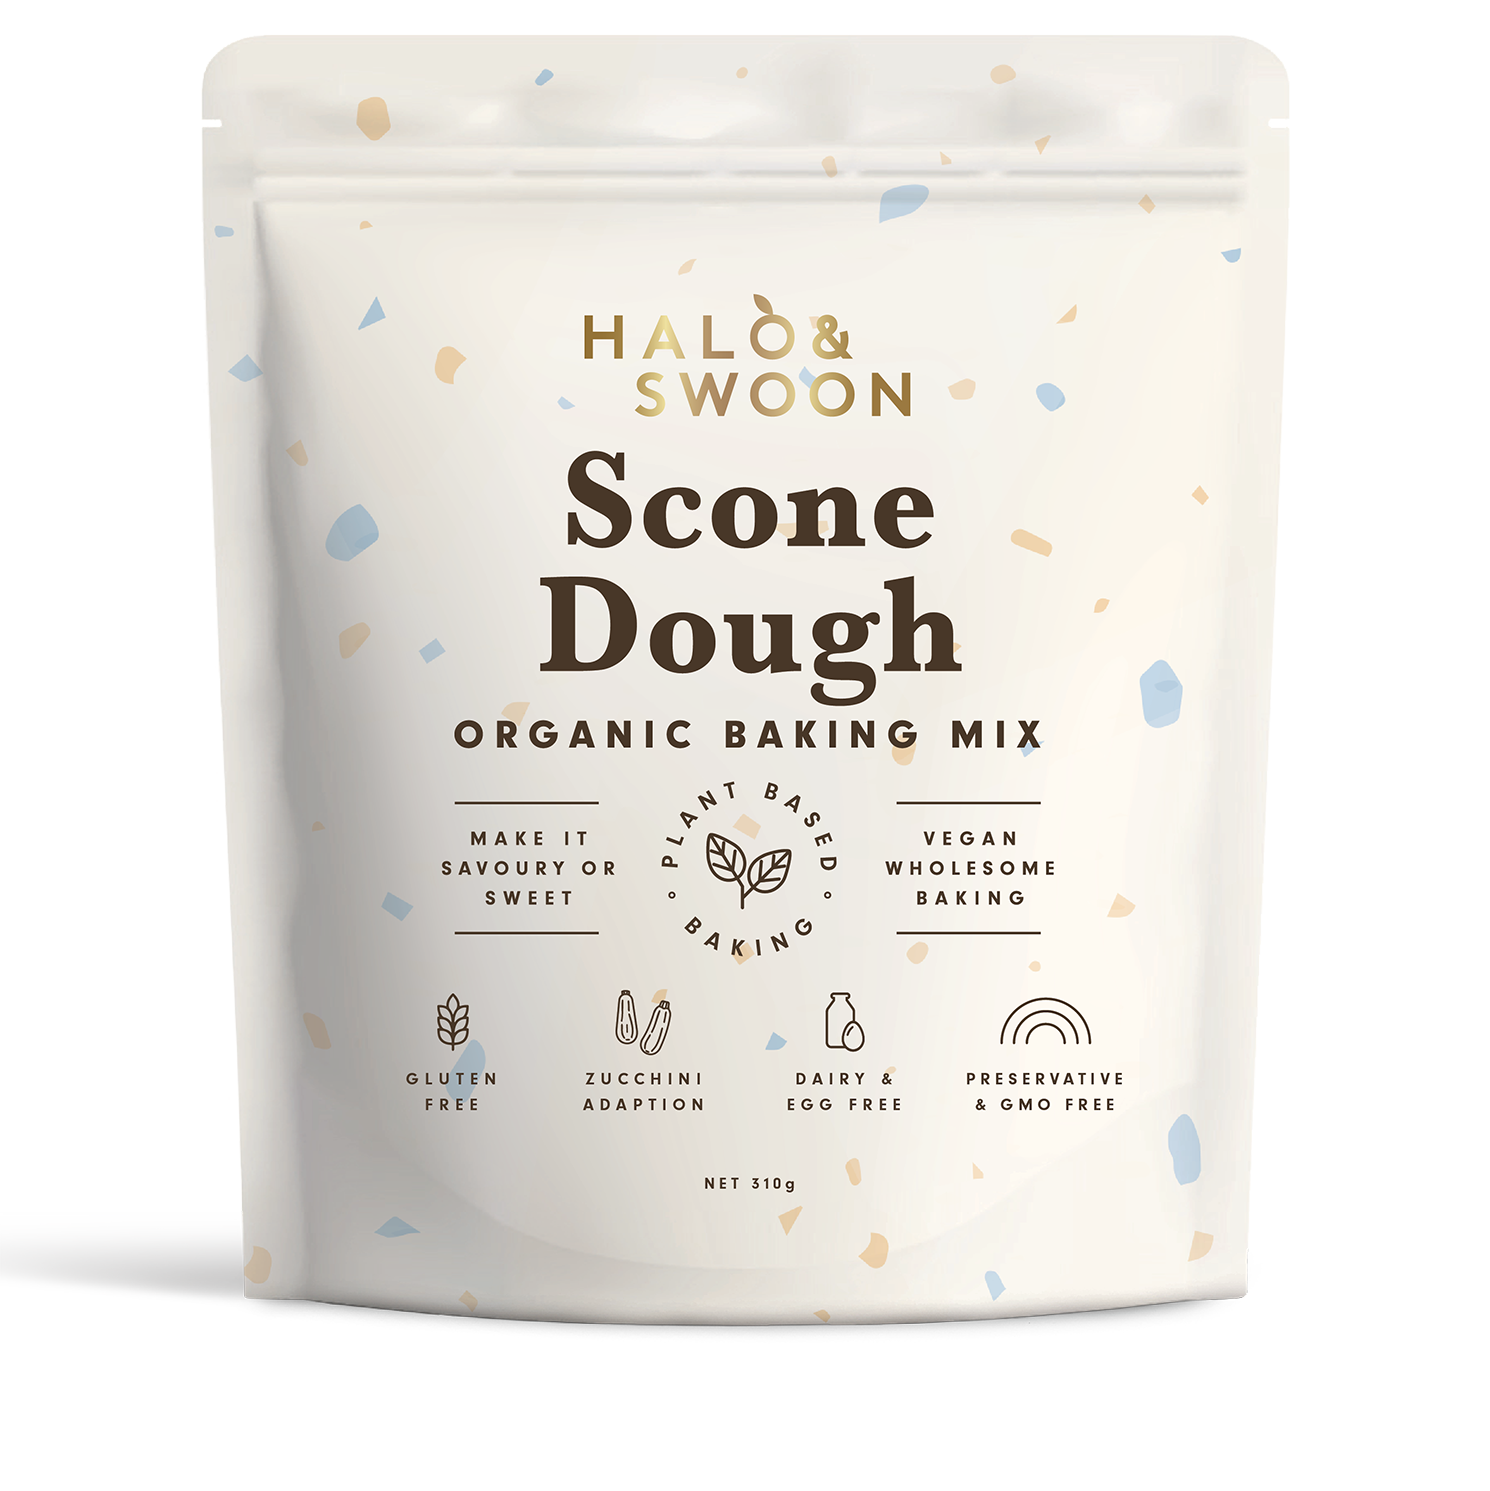 Halo & Swoon Scone Dough - organic, vegan, gluten-free baking mix (savoury or sweet)